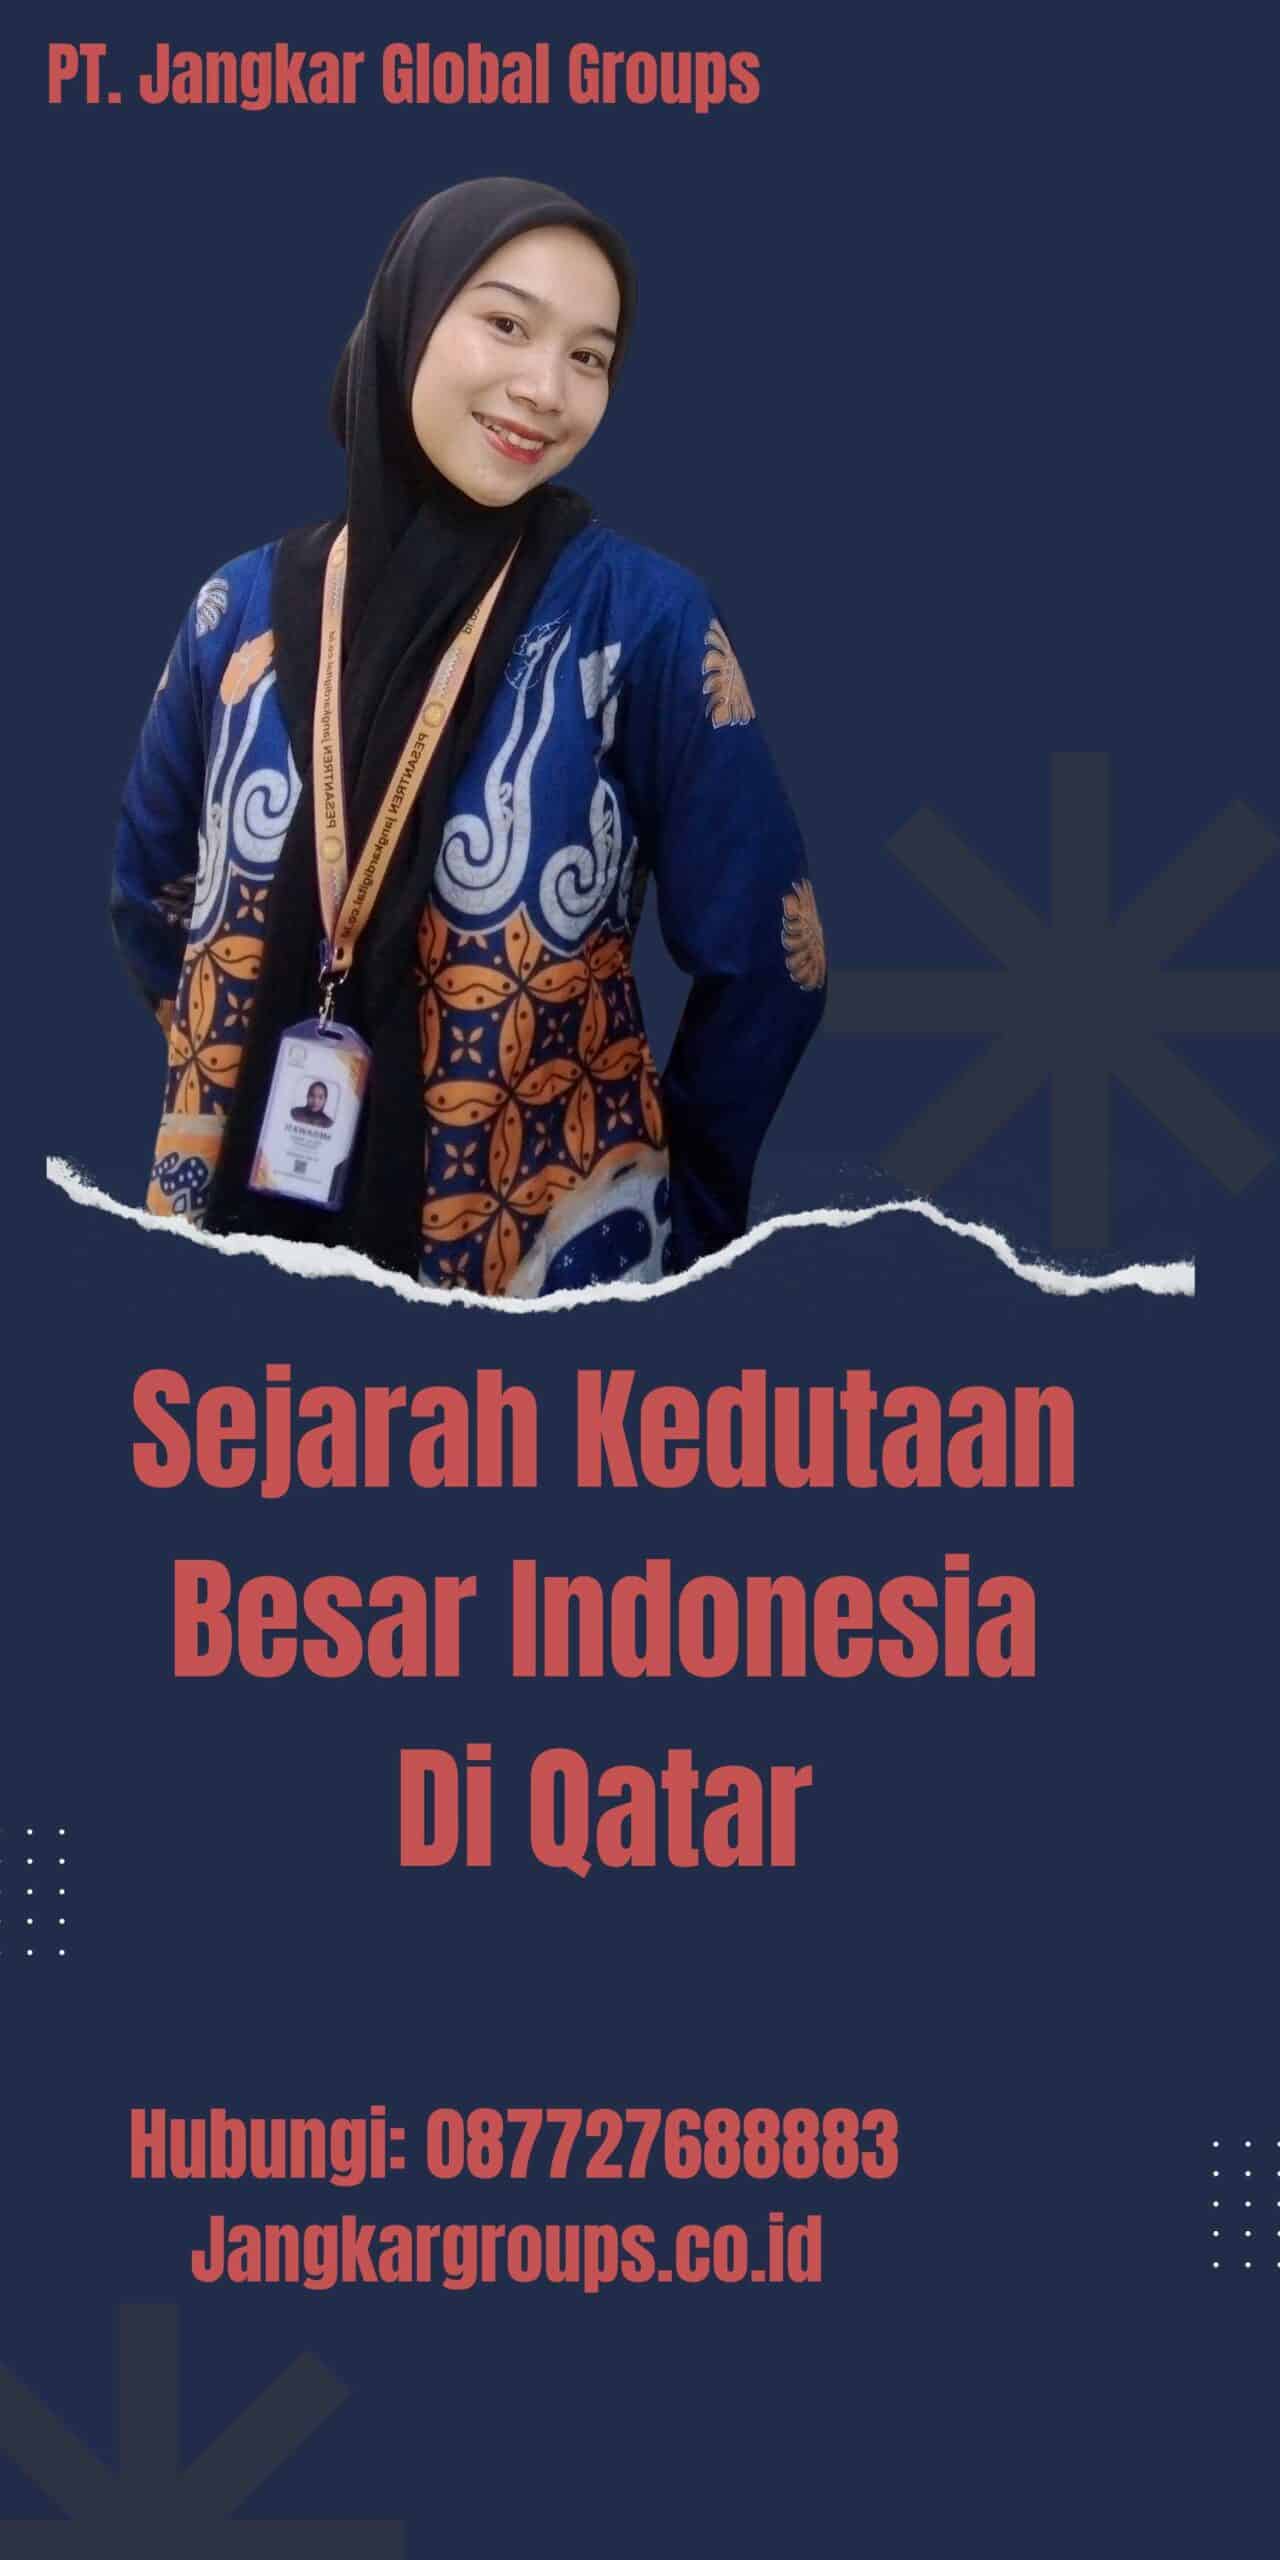 Sejarah Kedutaan Besar Indonesia Di Qatar